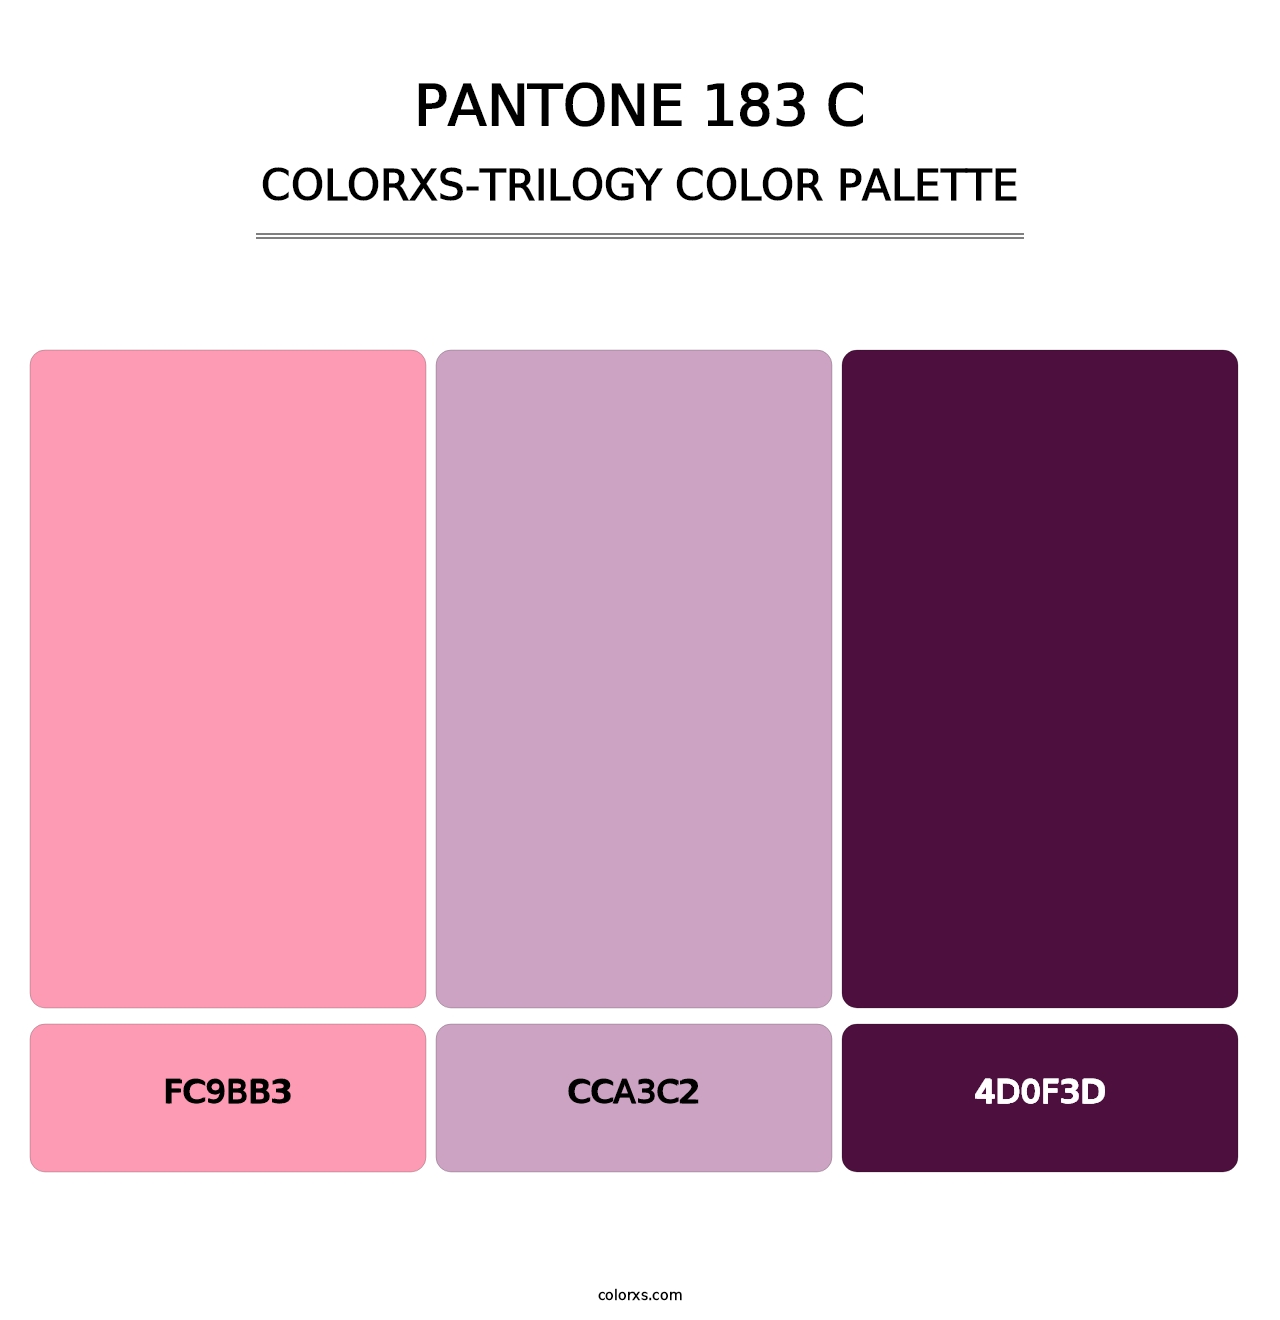 PANTONE 183 C - Colorxs Trilogy Palette